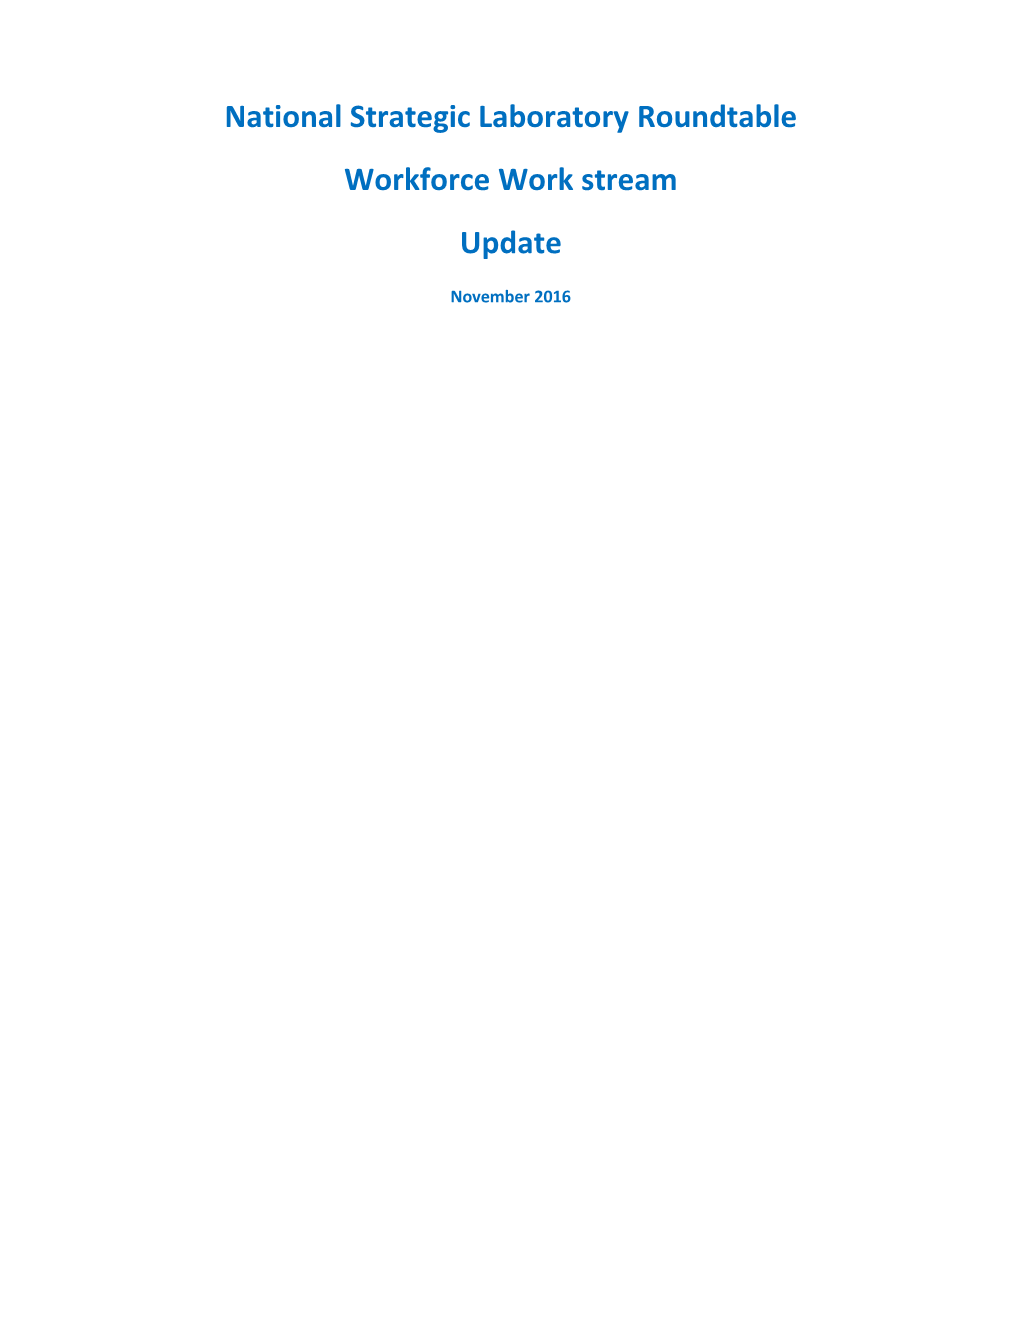 Workforce Work Stream Update November 2016